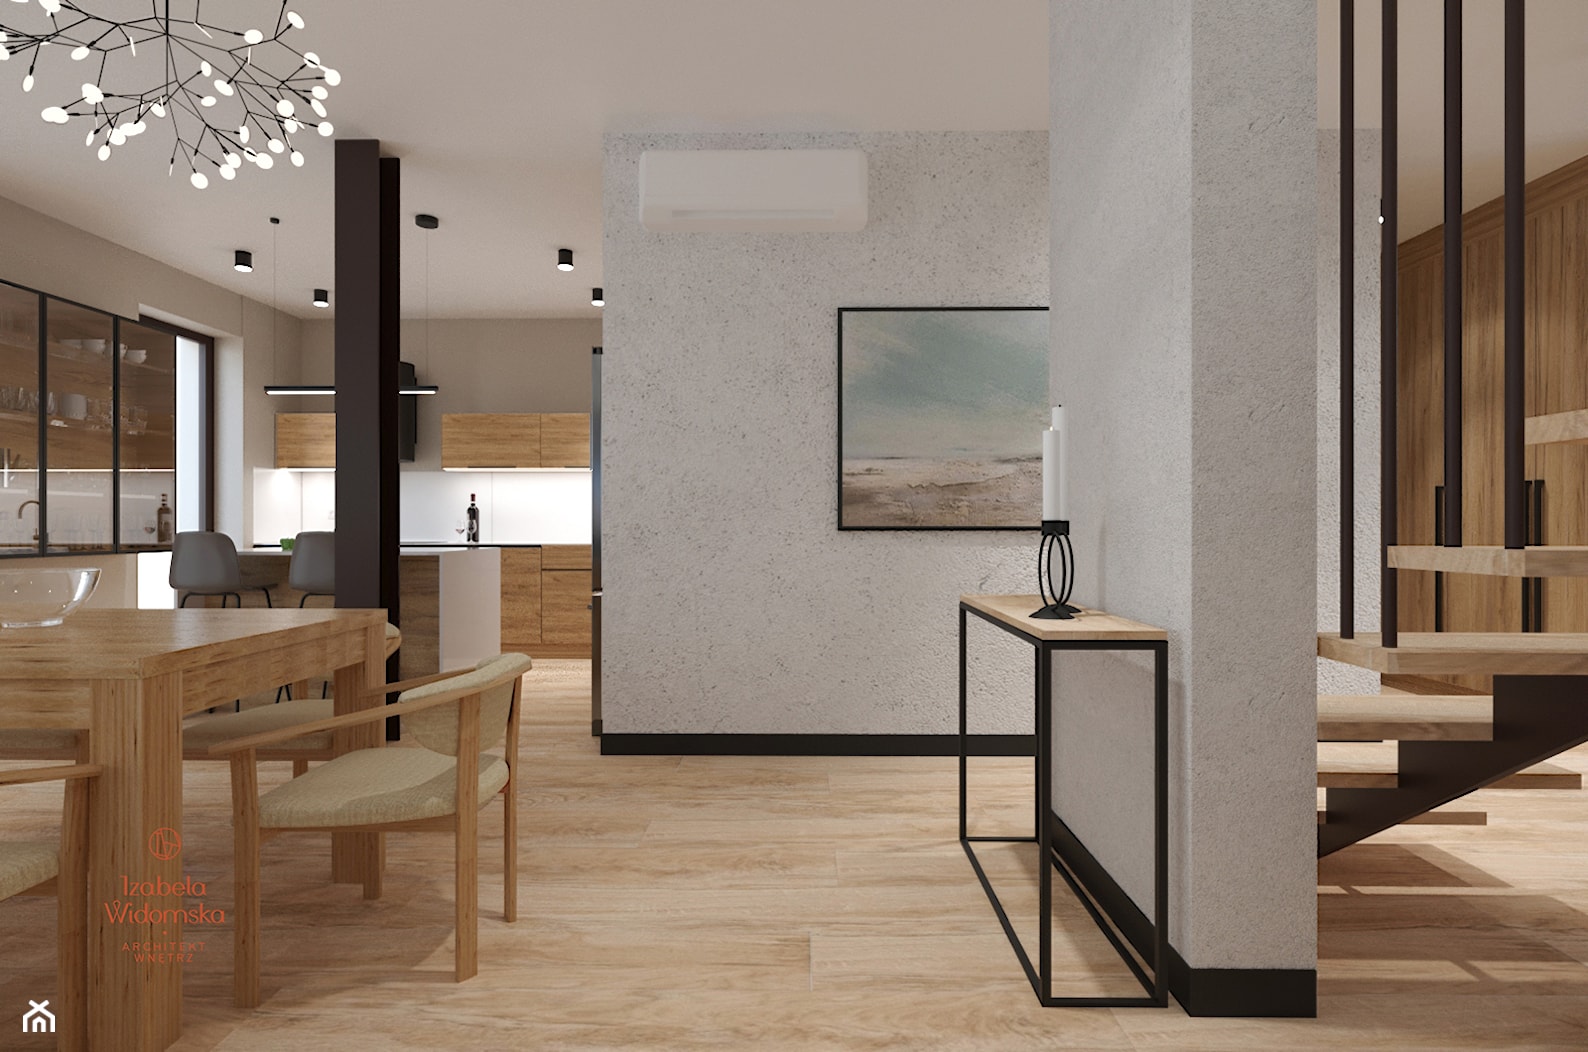 Dom w minimalistycznym stylu - Salon, styl nowoczesny - zdjęcie od Izabela Widomska Wnętrza - Homebook